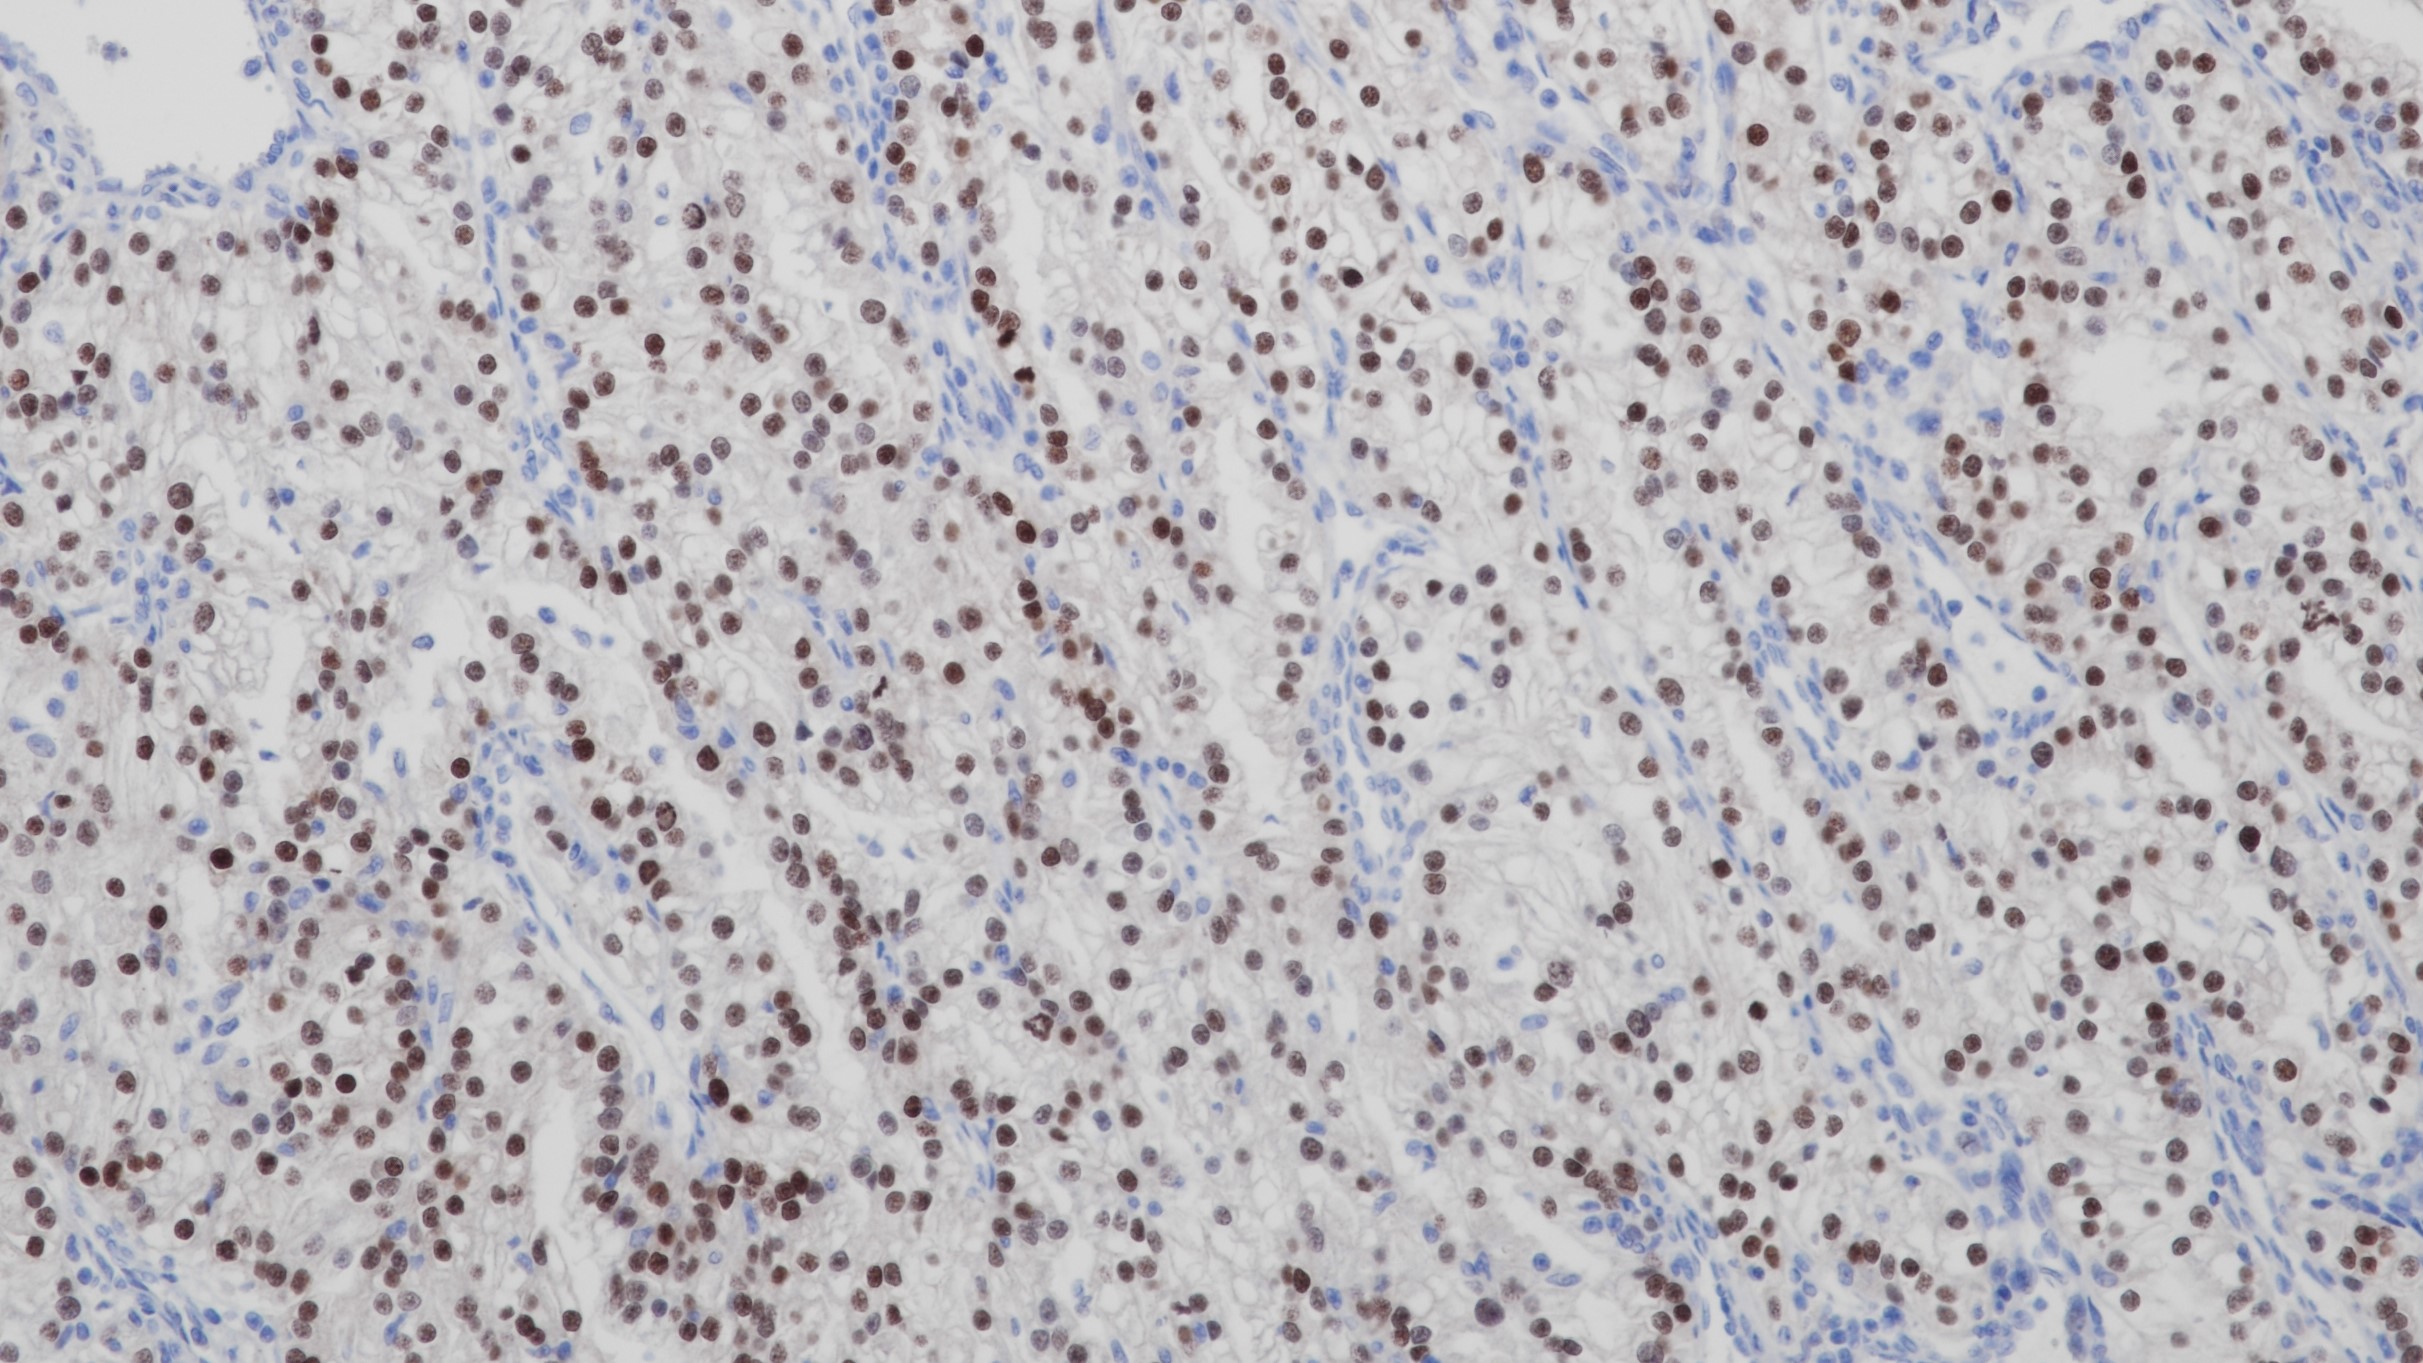 肾透明细胞癌PAX-2(BP6044)染色